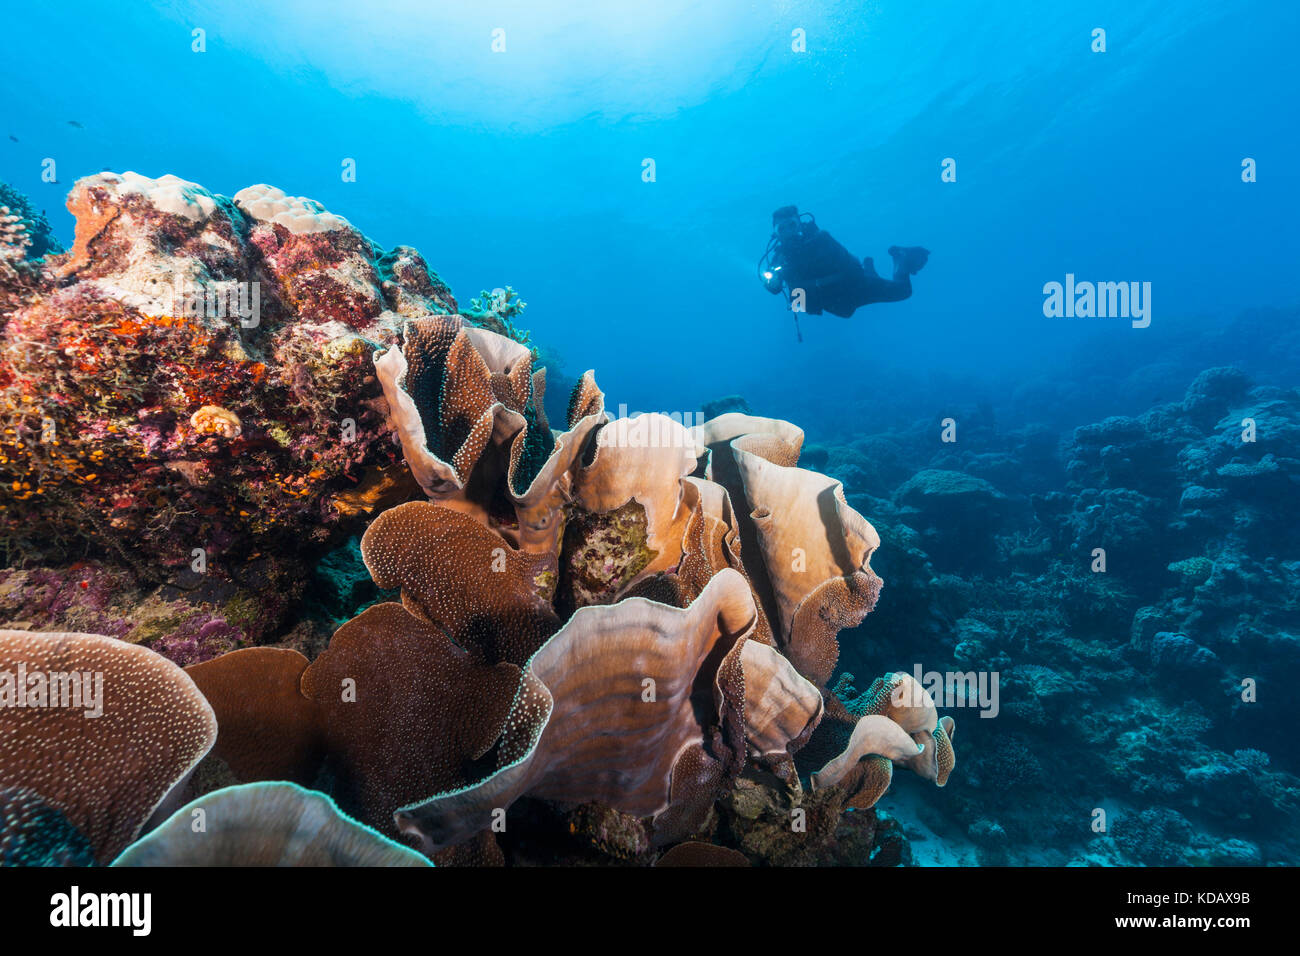 La découverte de la plongée formations de corail d'Agincourt Reef, Great Barrier Reef Marine Park, Port Douglas, Queensland, Australie Banque D'Images